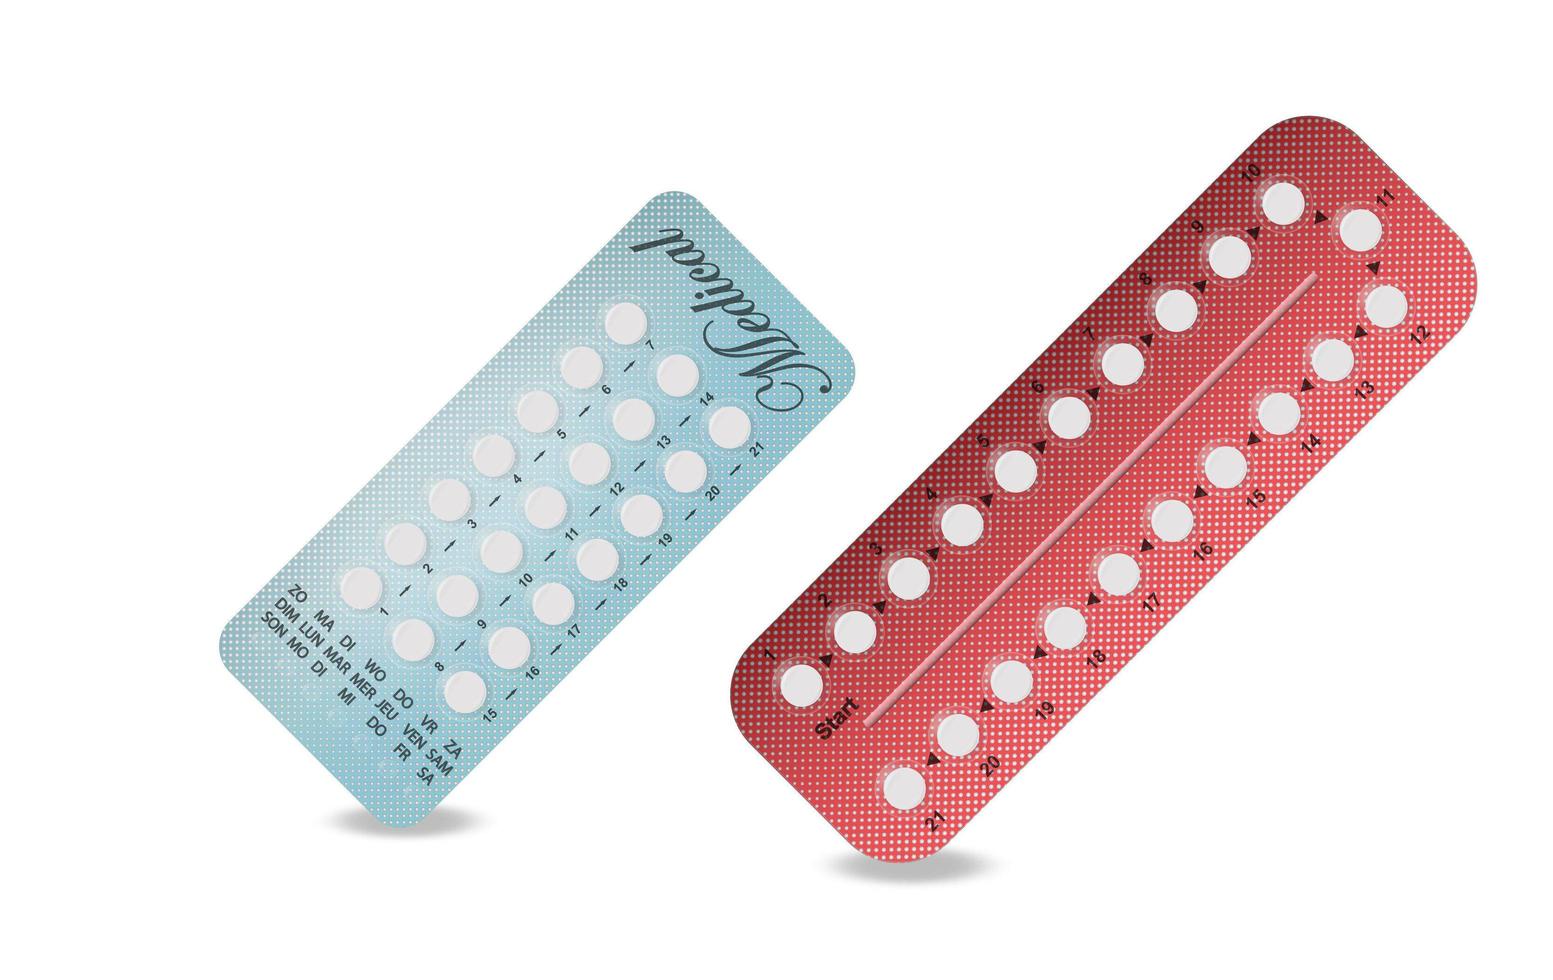 embalagem de pílulas anticoncepcionais em vermelho, azul. pílula anticoncepcional, pílulas hormonais, pílulas anticoncepcionais. contracepção oral feminina. planejando gravidez concept.realistic bolha com pílulas anticoncepcionais. vetor